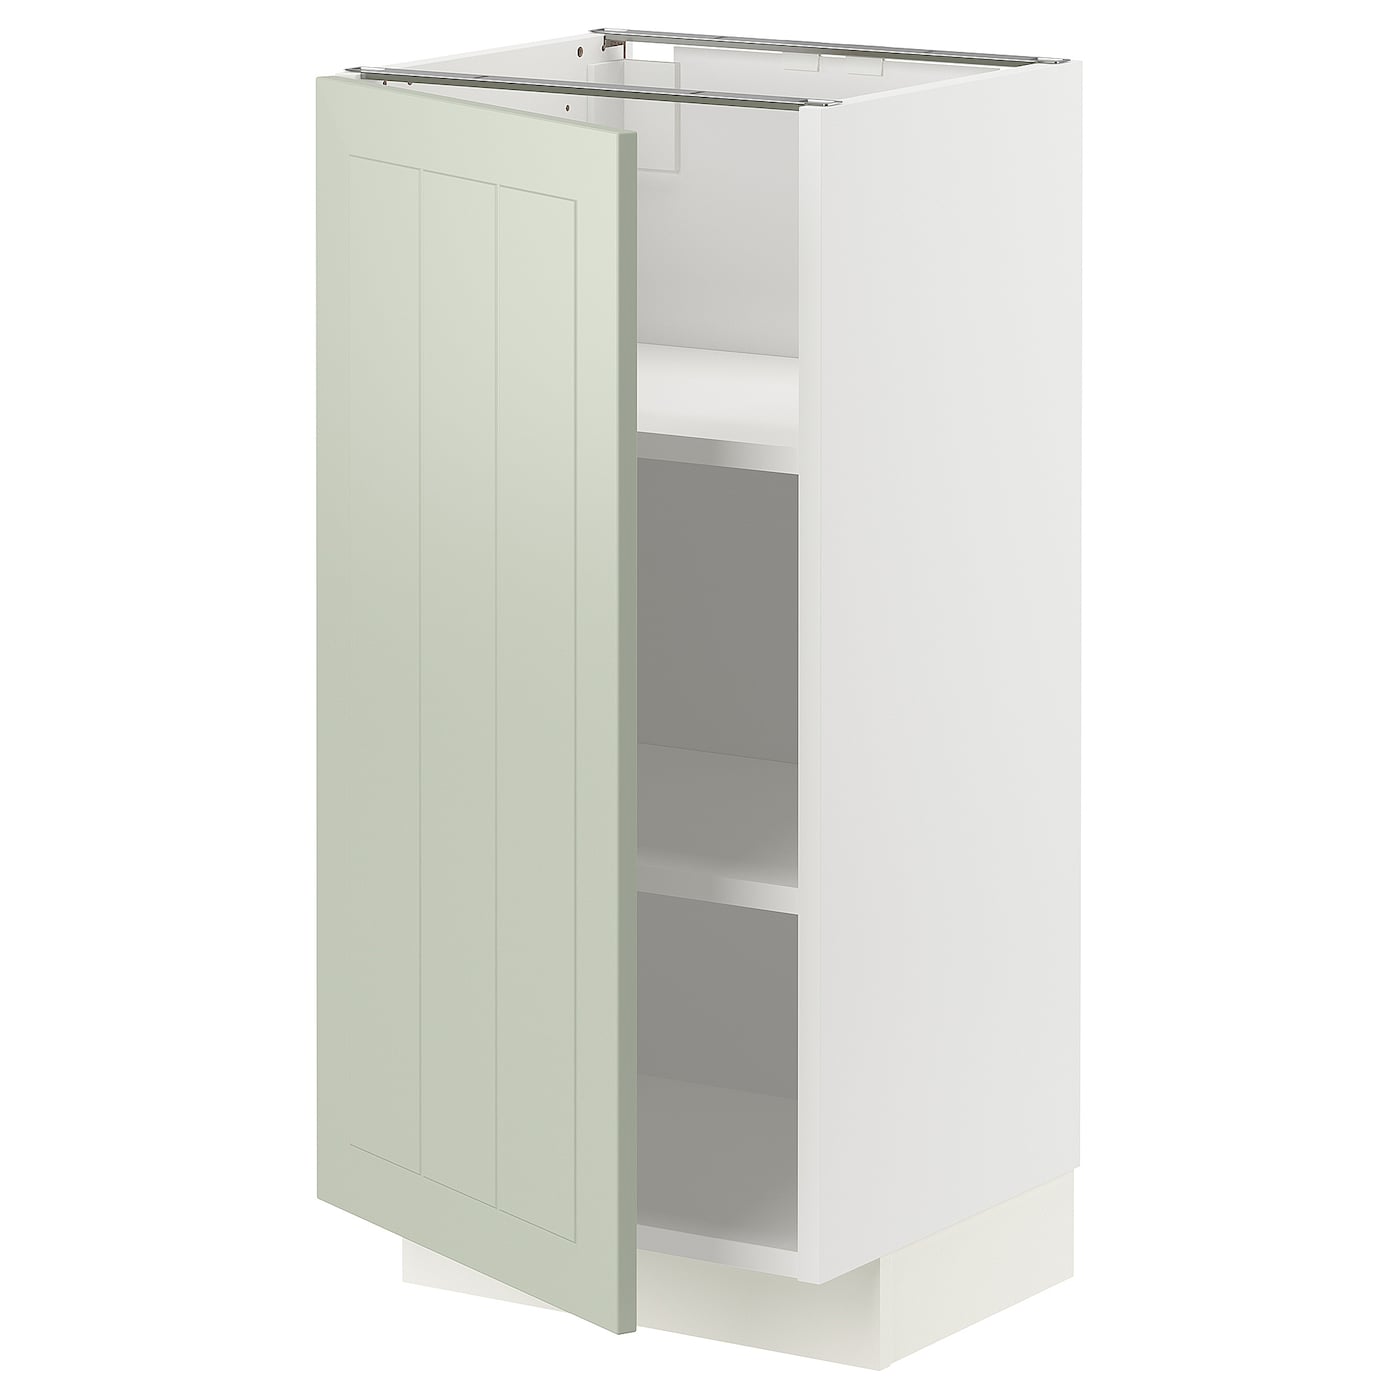 Напольный шкаф - IKEA METOD, 88x39,5x40см, белый/светло-зеленый, МЕТОД ИКЕА